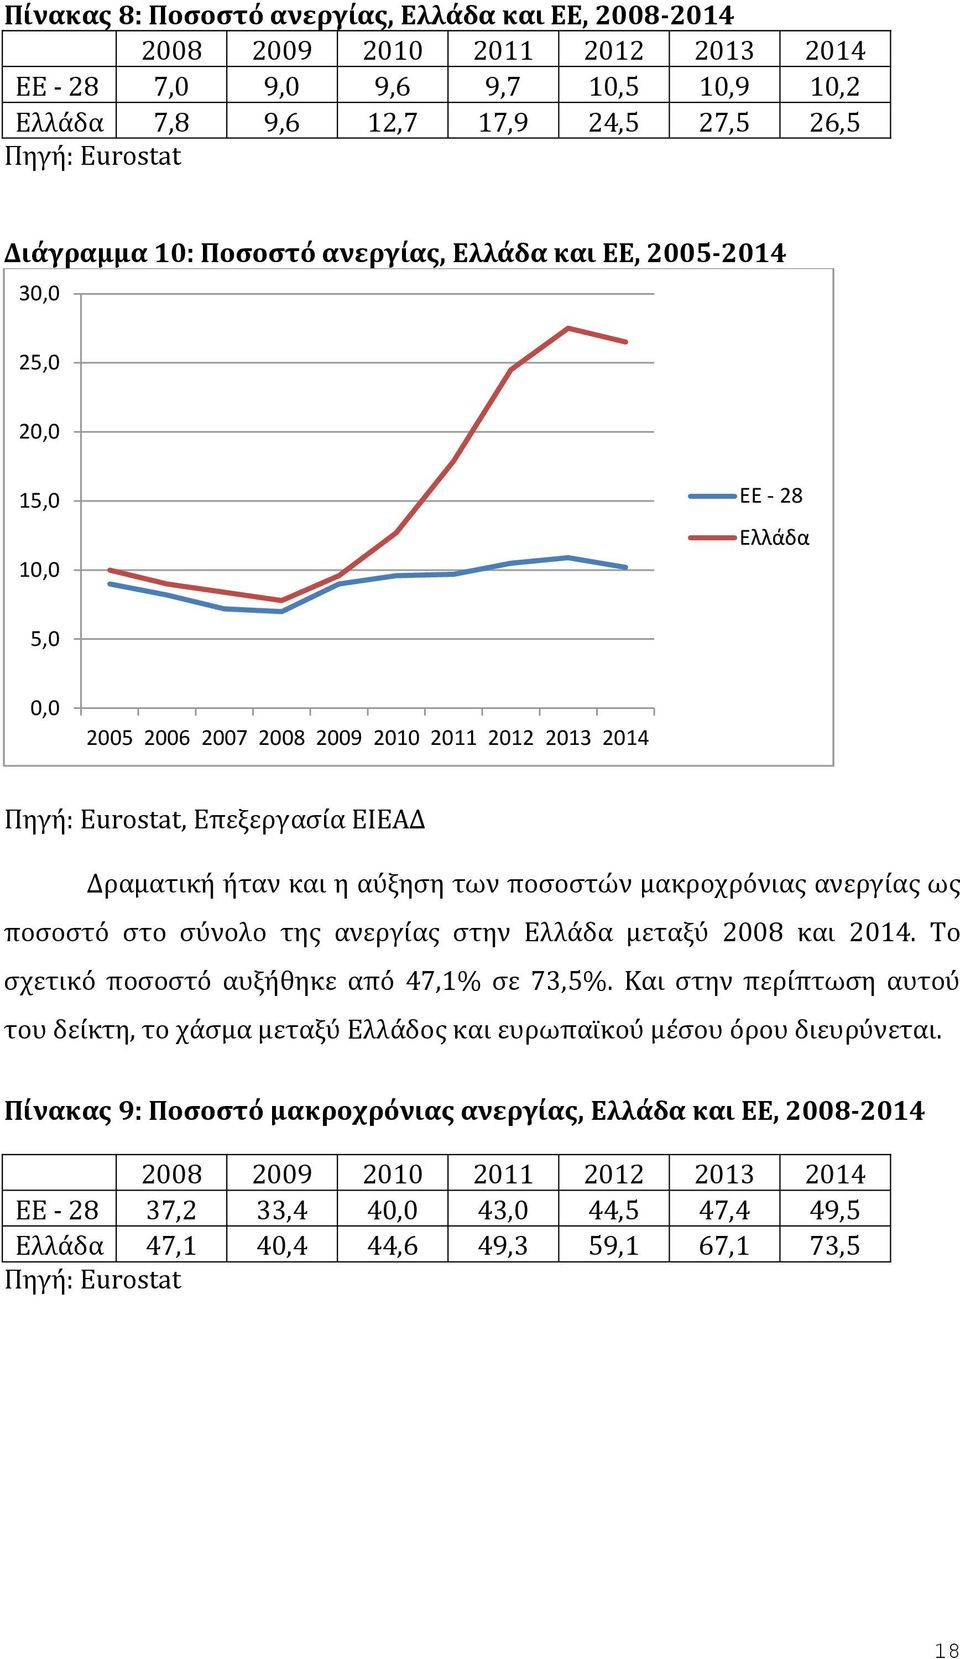 αύξηση των ποσοστών μακροχρόνιας ανεργίας ως ποσοστό στο σύνολο της ανεργίας στην Ελλάδα μεταξύ 2008 και 2014. Το σχετικό ποσοστό αυξήθηκε από 47,1% σε 73,5%.